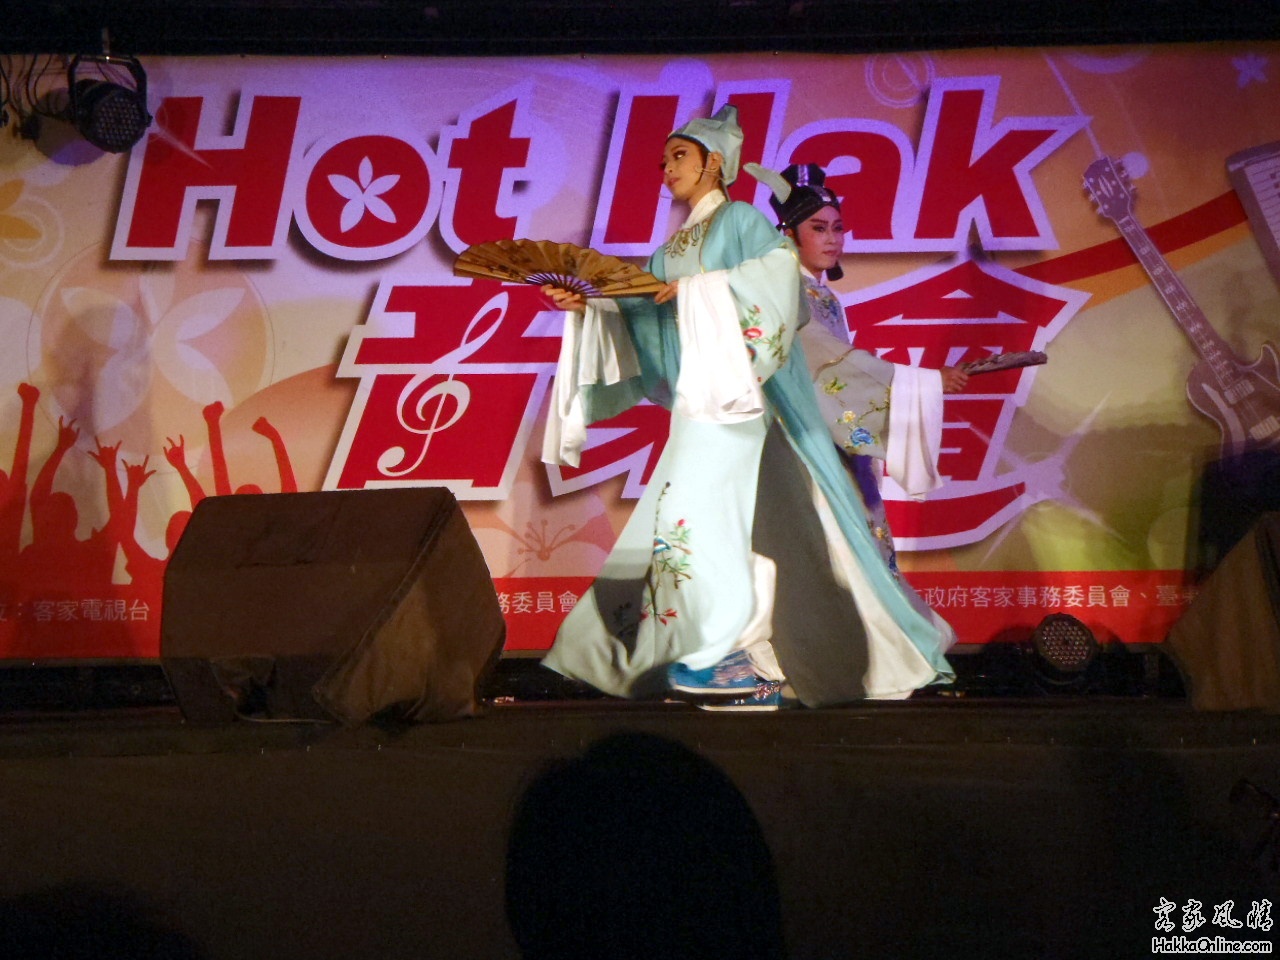 花蓮場的「Hot Hak 音樂會」6